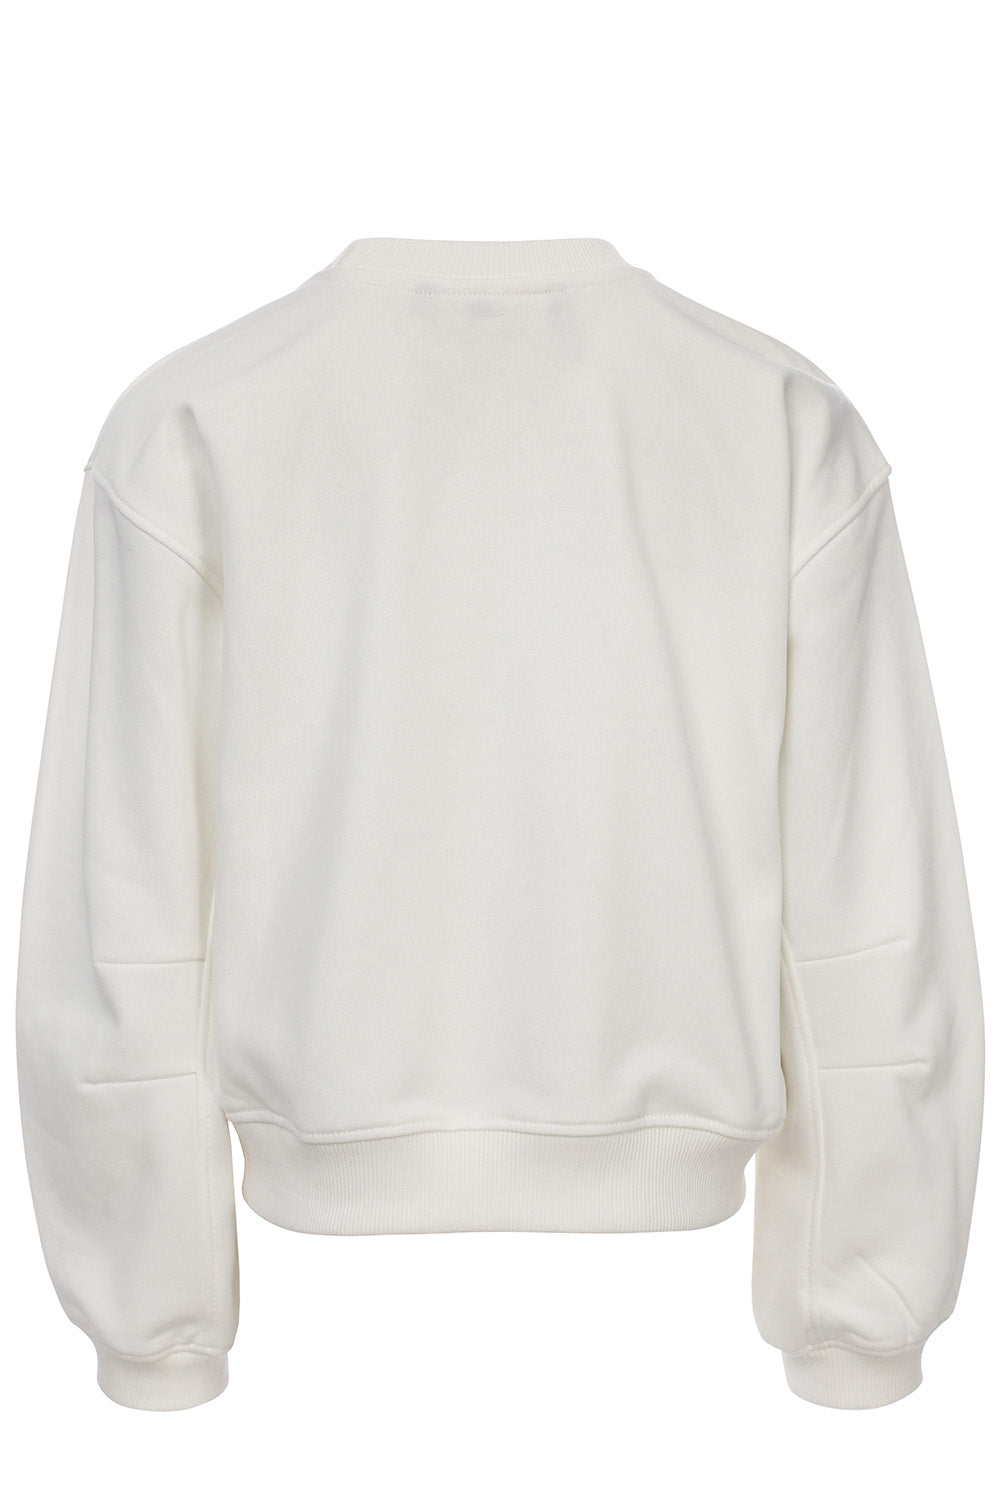 Meisjes Sweater van LOOXS 10sixteen in de kleur Soft white in maat 176.